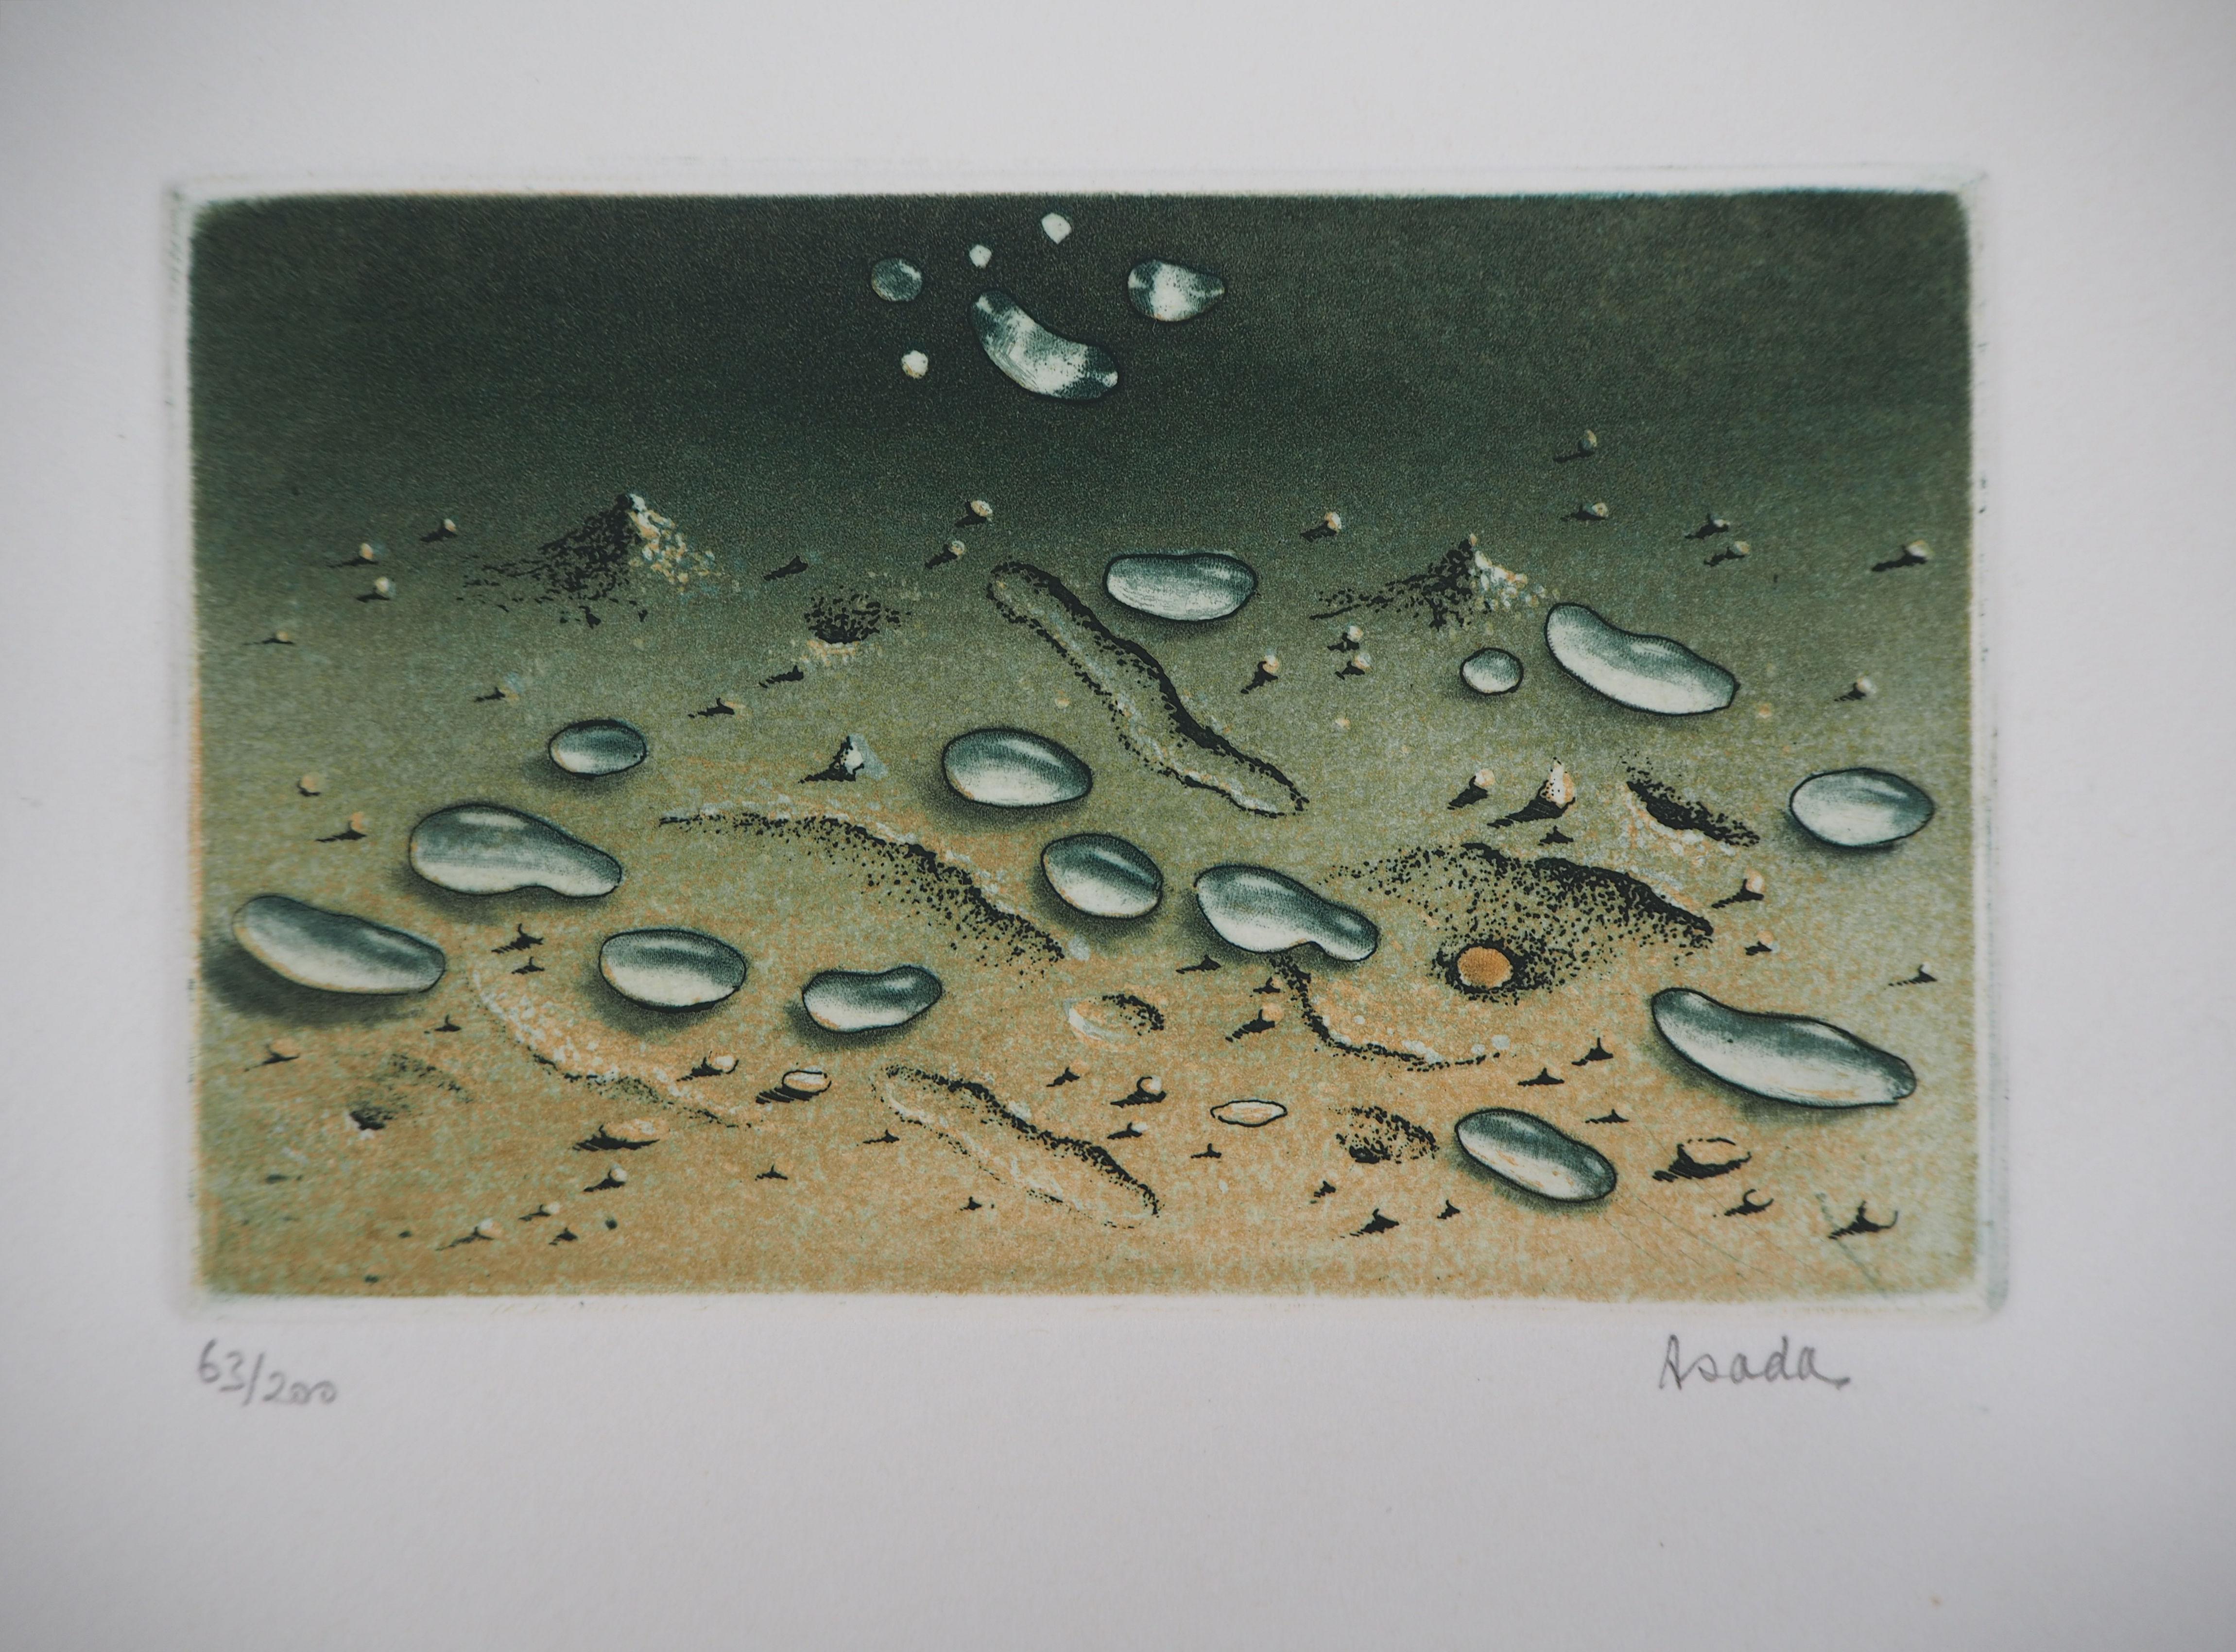 Hiroshi ASADA
Zen : Gouttes d'eau sur le sable

Gravure et aquatinte originales
Signé à la main au crayon
Numéroté / 200
Sur vélin d'Arches 16,5 x 21 cm (environ 6,5 x 8 pouces)

Excellent état